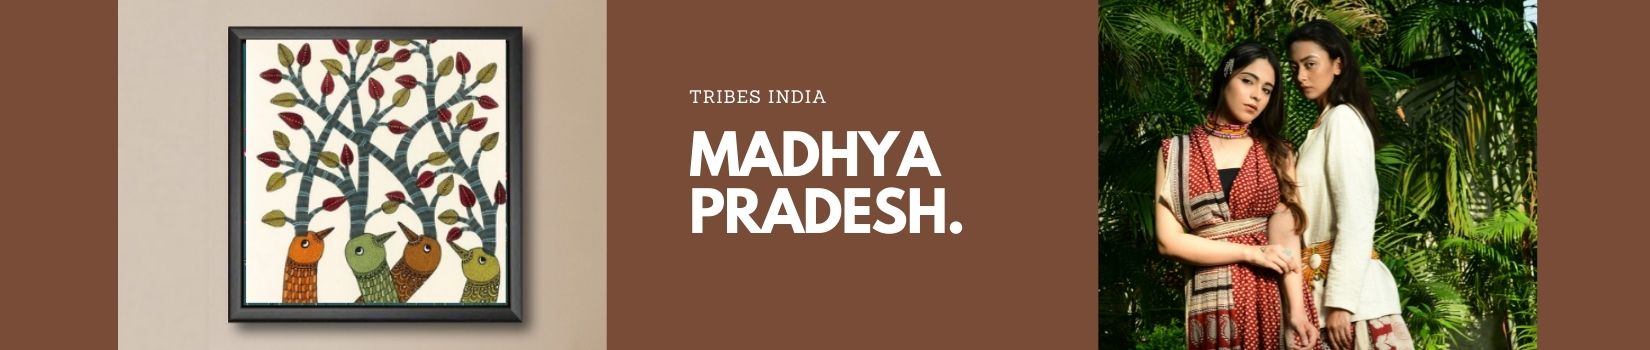 Tribes India Madhya Pradesh